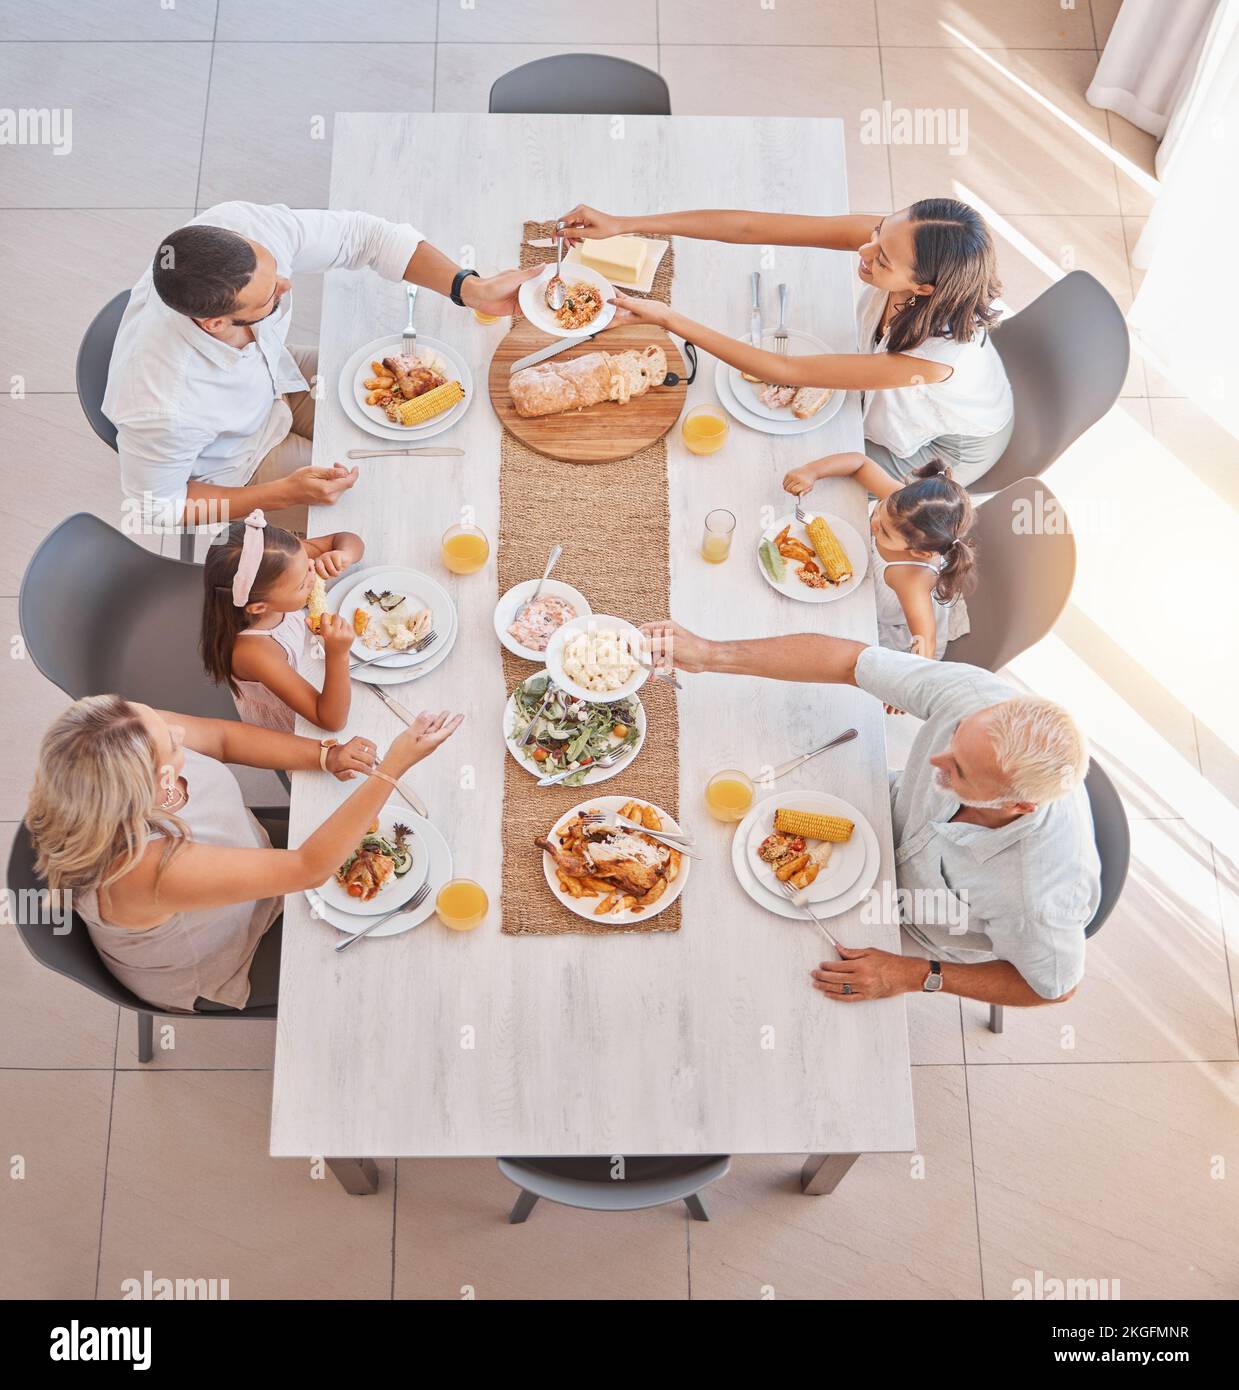 Familie, Essen und Mittagessen mit Liebe und Sorgfalt am Esstisch zum Essen und Trinken. Gruppe, Großeltern und Eltern mit Kindern, die eine köstliche Mahlzeit essen Stockfoto